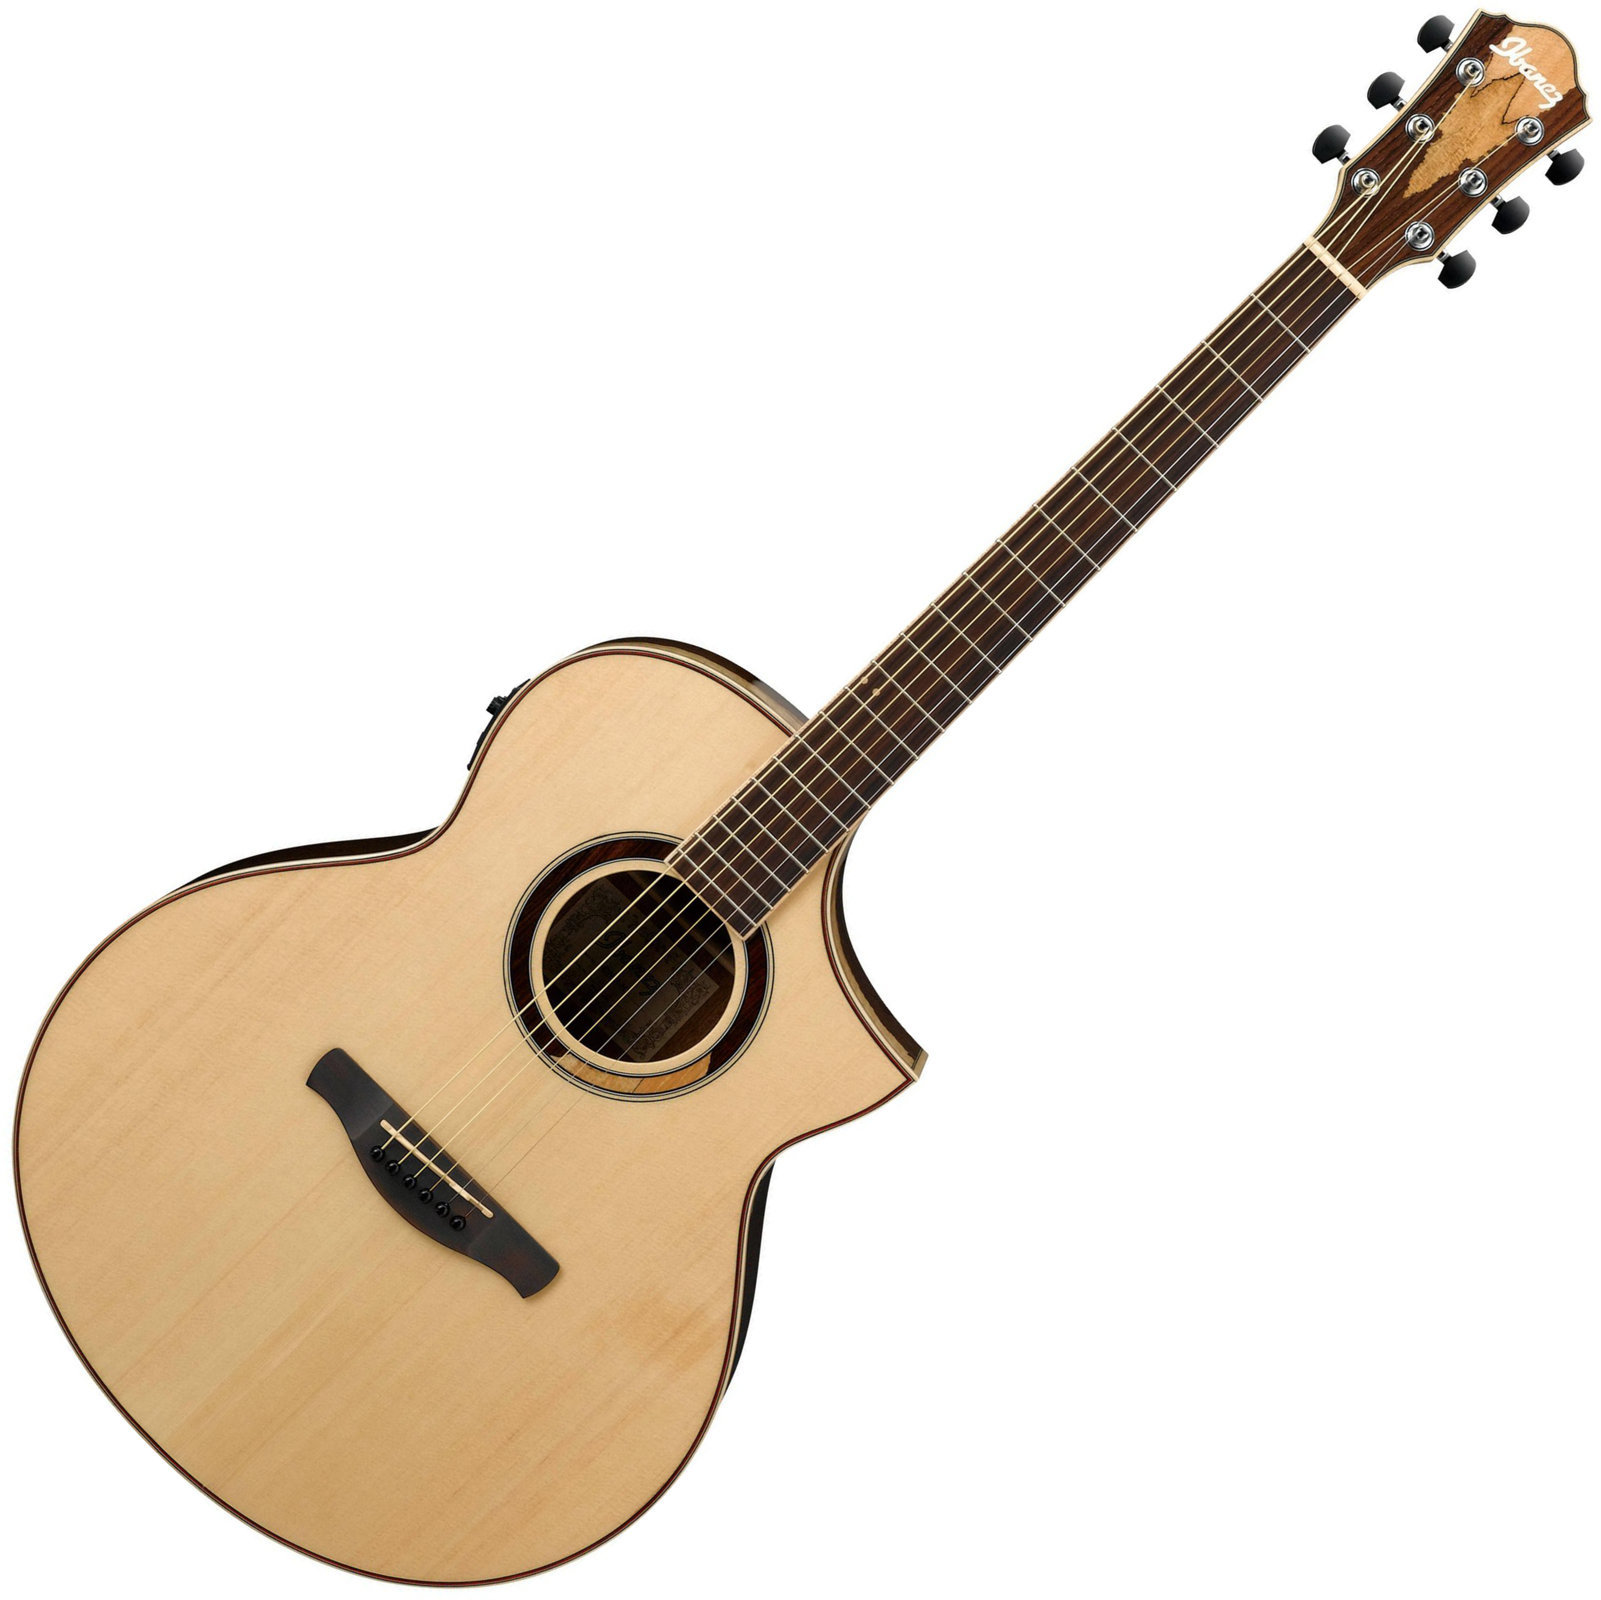 Jumbo elektro-akoestische gitaar Ibanez AEW51 Natural High Gloss